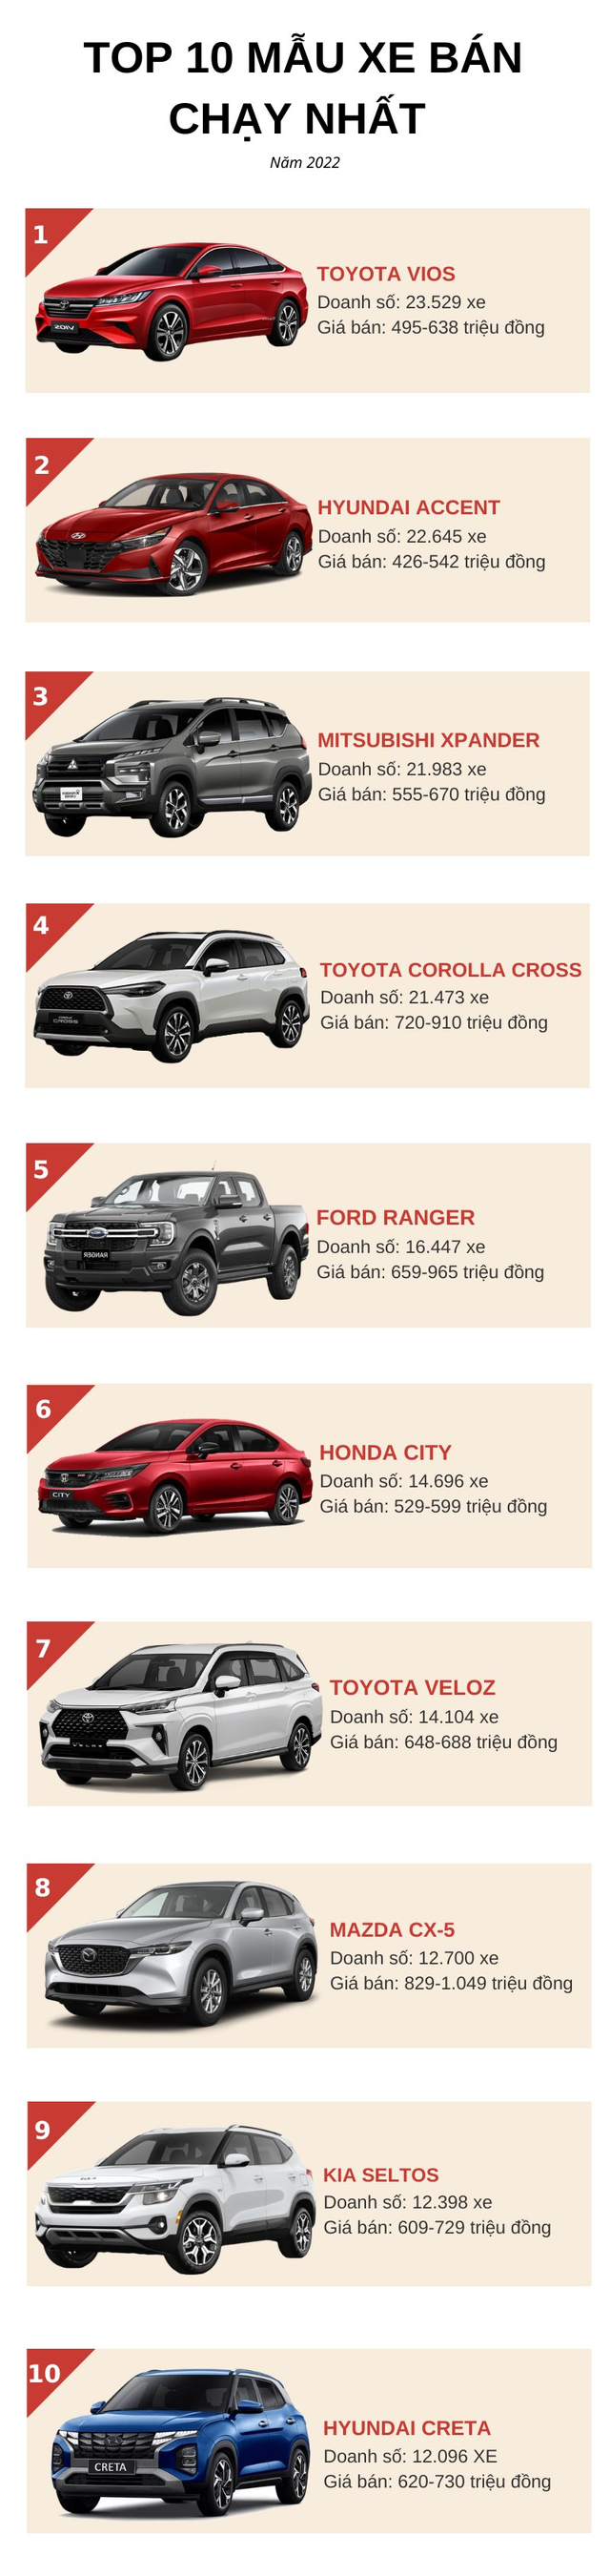 Top 10 ô tô bán chạy nhất năm 2022: Ngôi vương gọi tên Toyota Vios, Hyundai Accent bám sát nút - Ảnh 1.